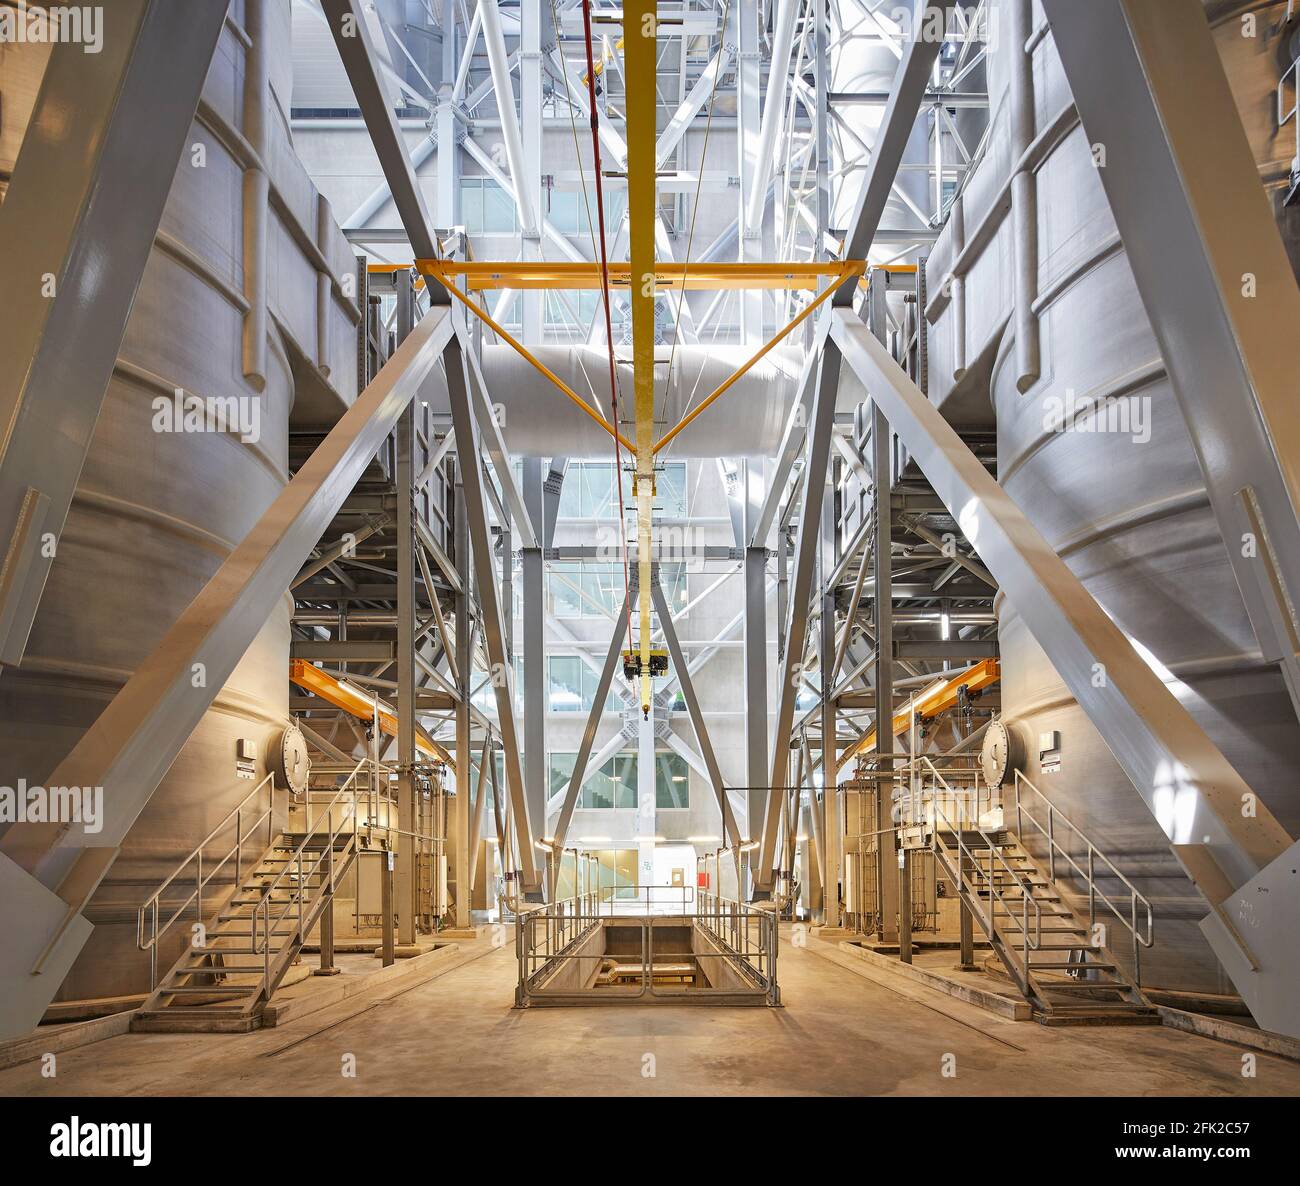 Innenraum der Industrieanlage. Kraftwerk CoppenHill, Kopenhagen, Dänemark. Architekt: BIG Bjarke Ingels Group, 2019. Stockfoto